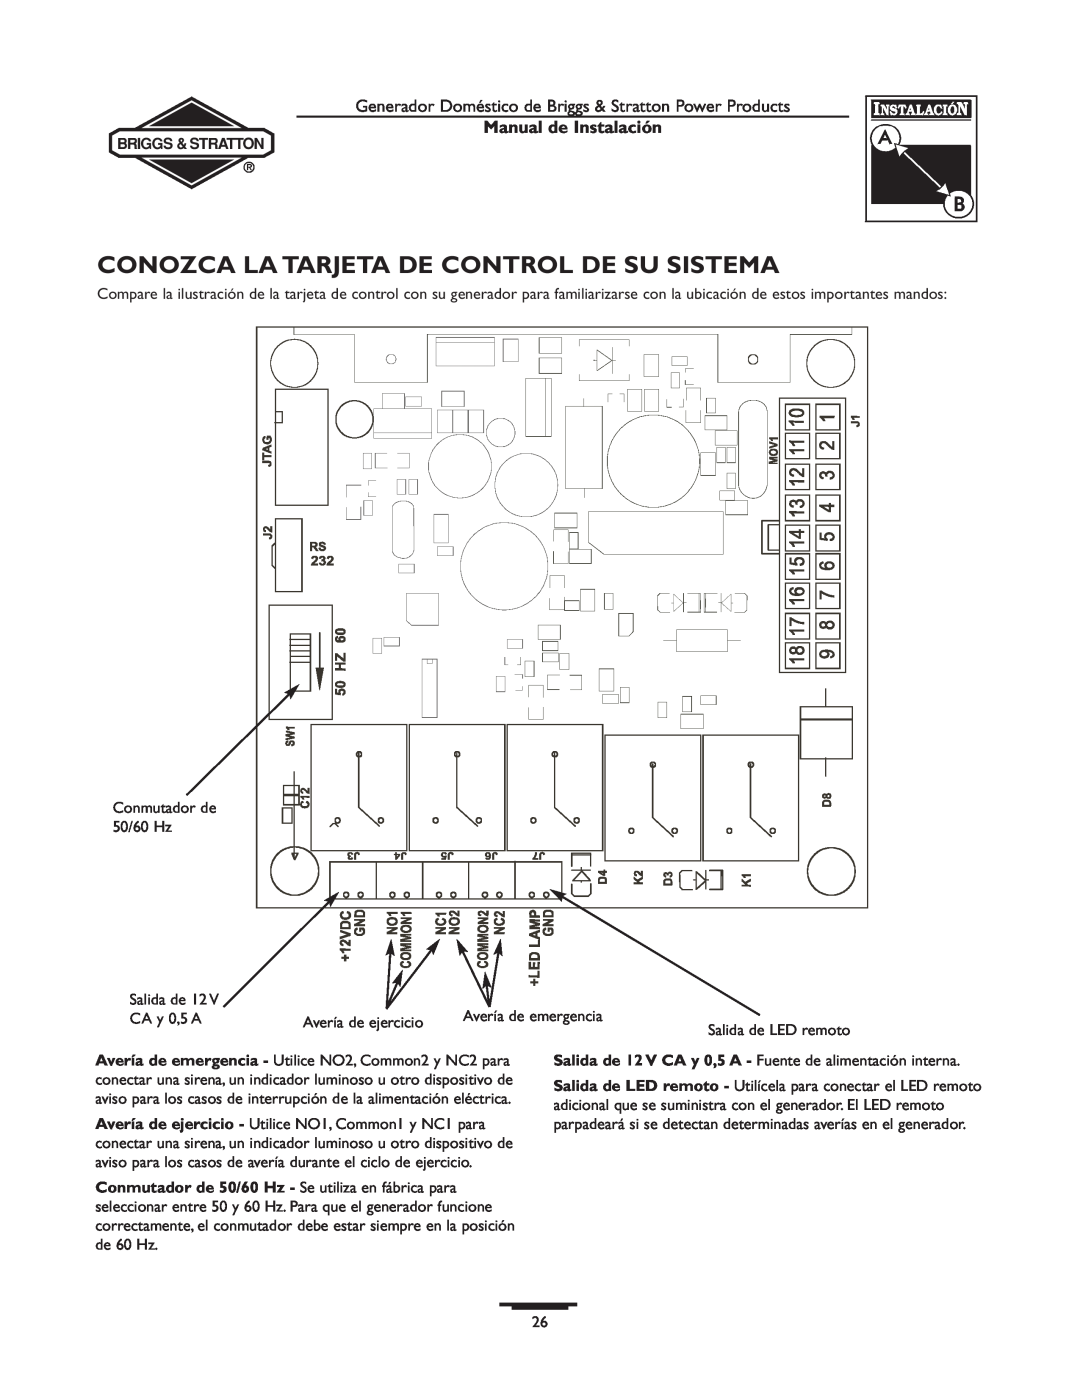 Briggs & Stratton 01938-0, 01815-0 manual Conozca La Tarjeta De Control De Su Sistema, Manual de Instalación 